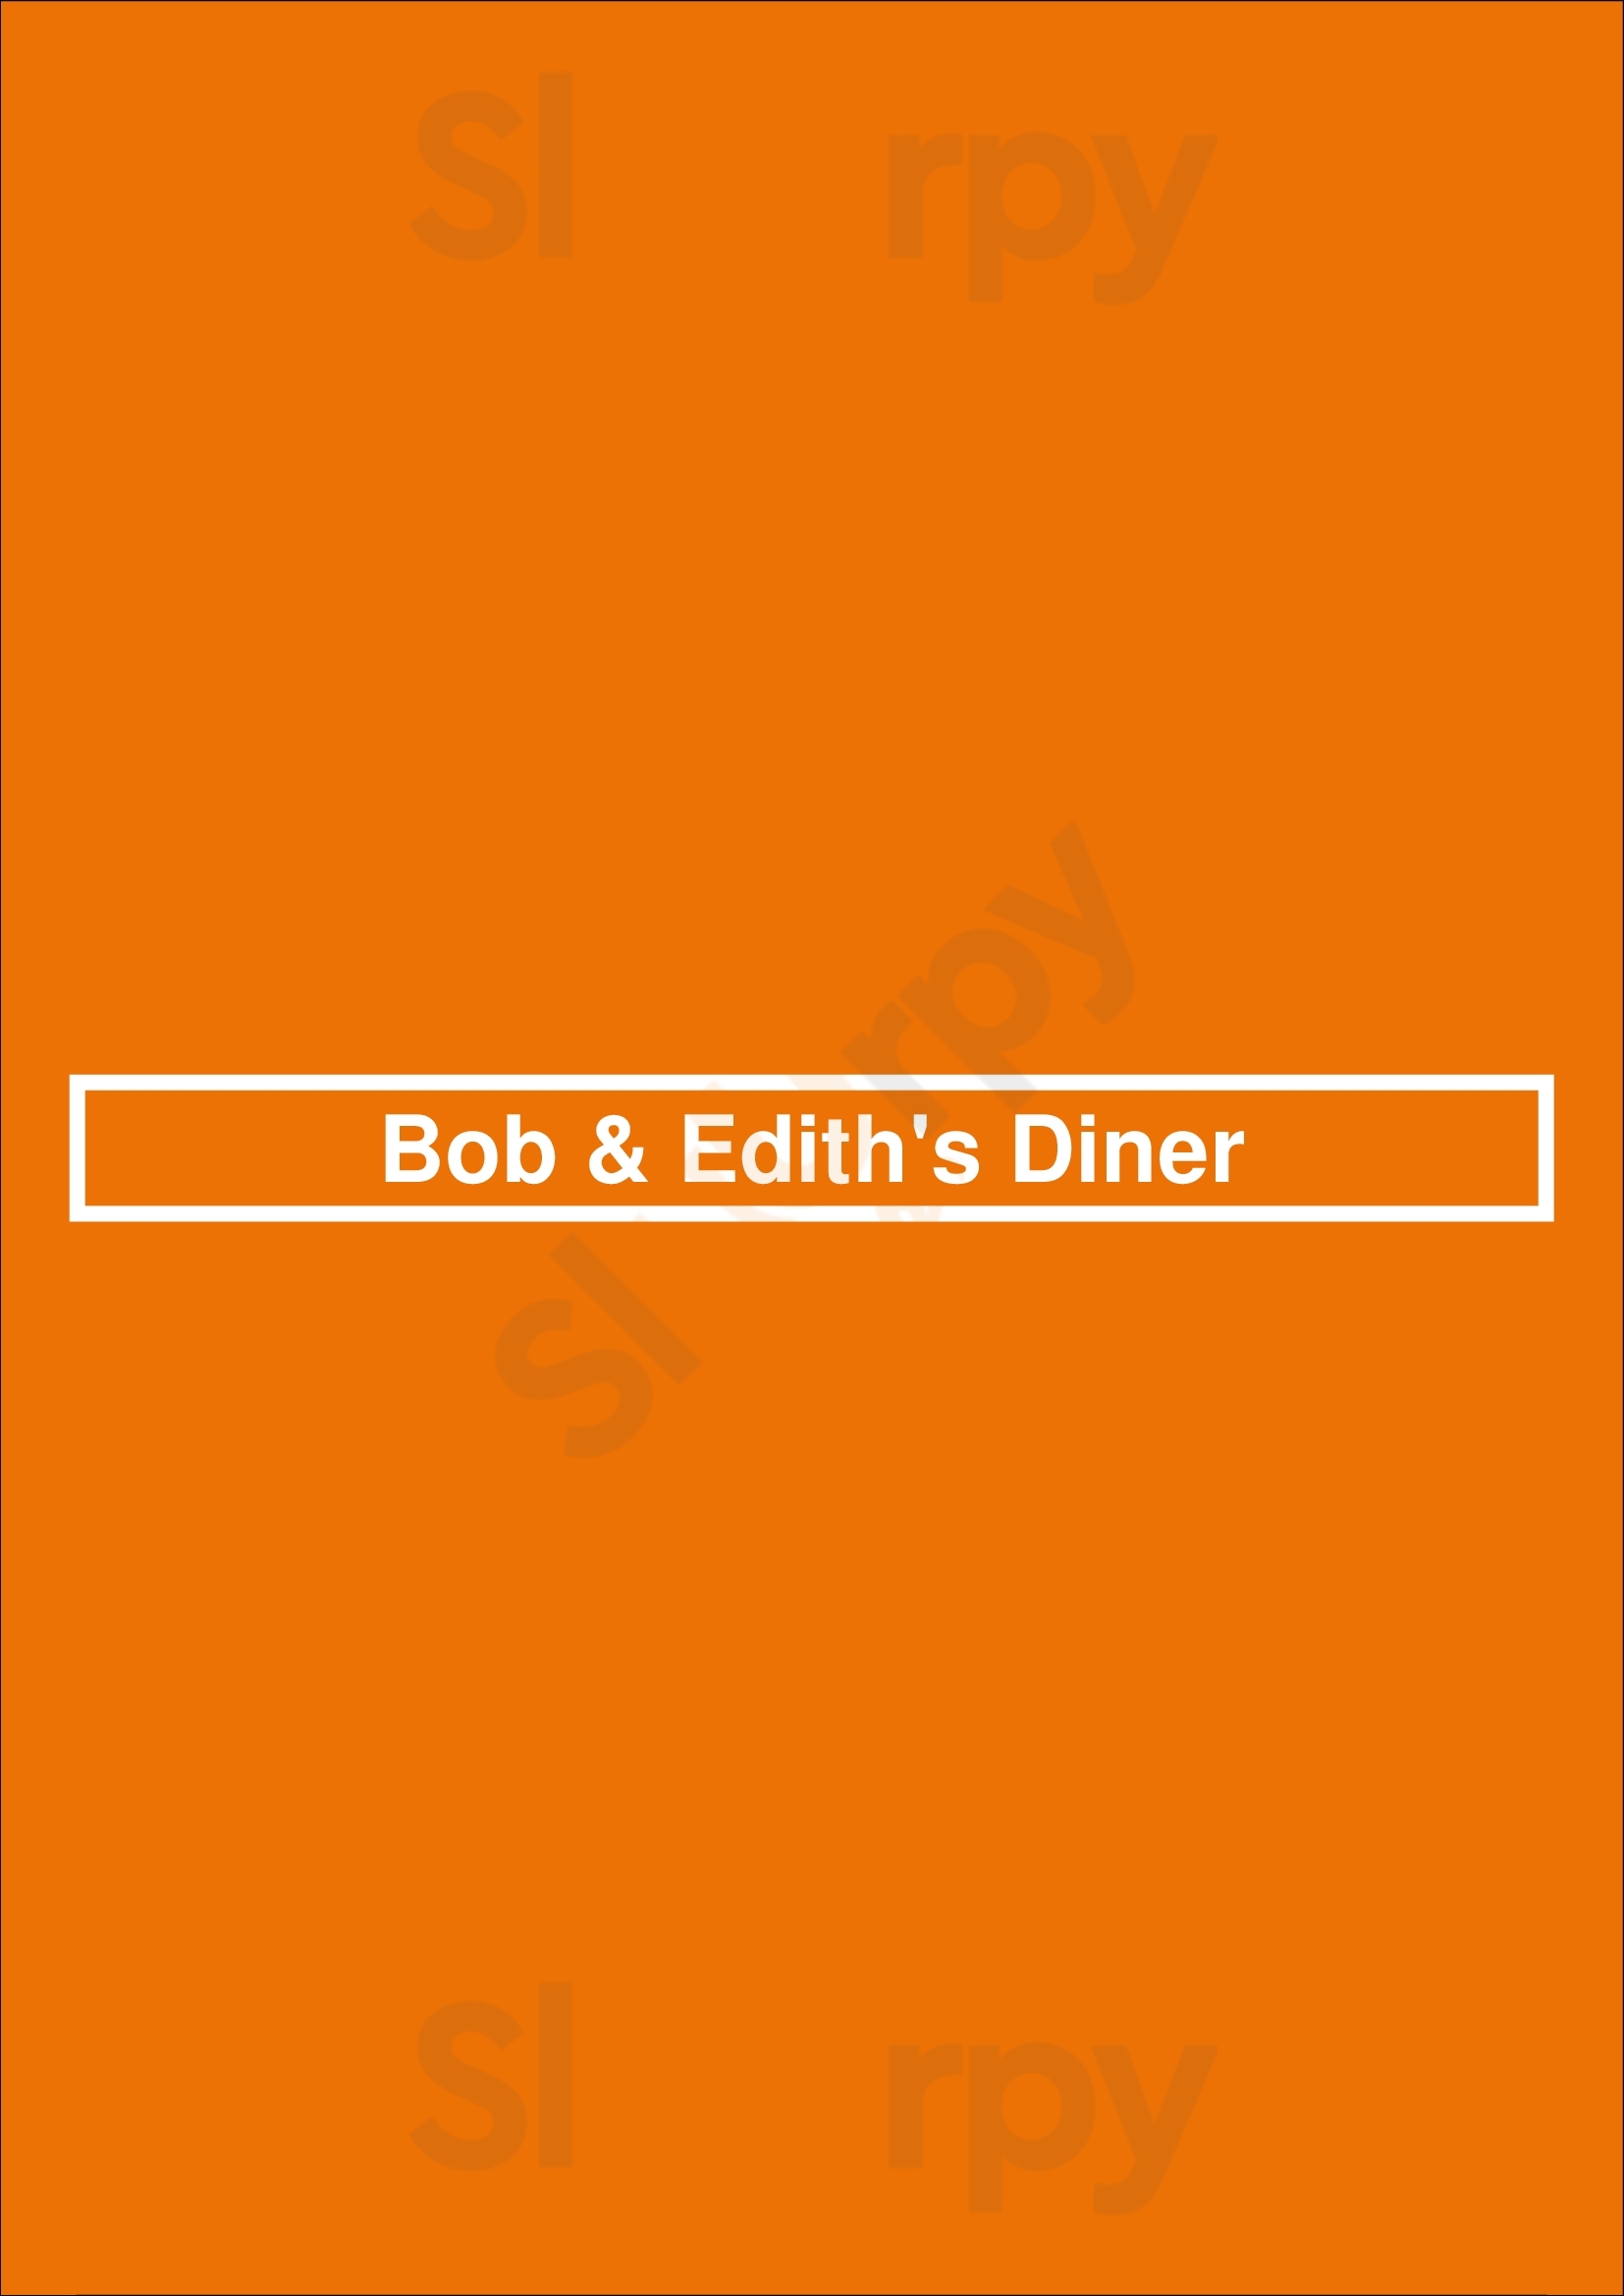 Bob & Edith's Diner Arlington Menu - 1